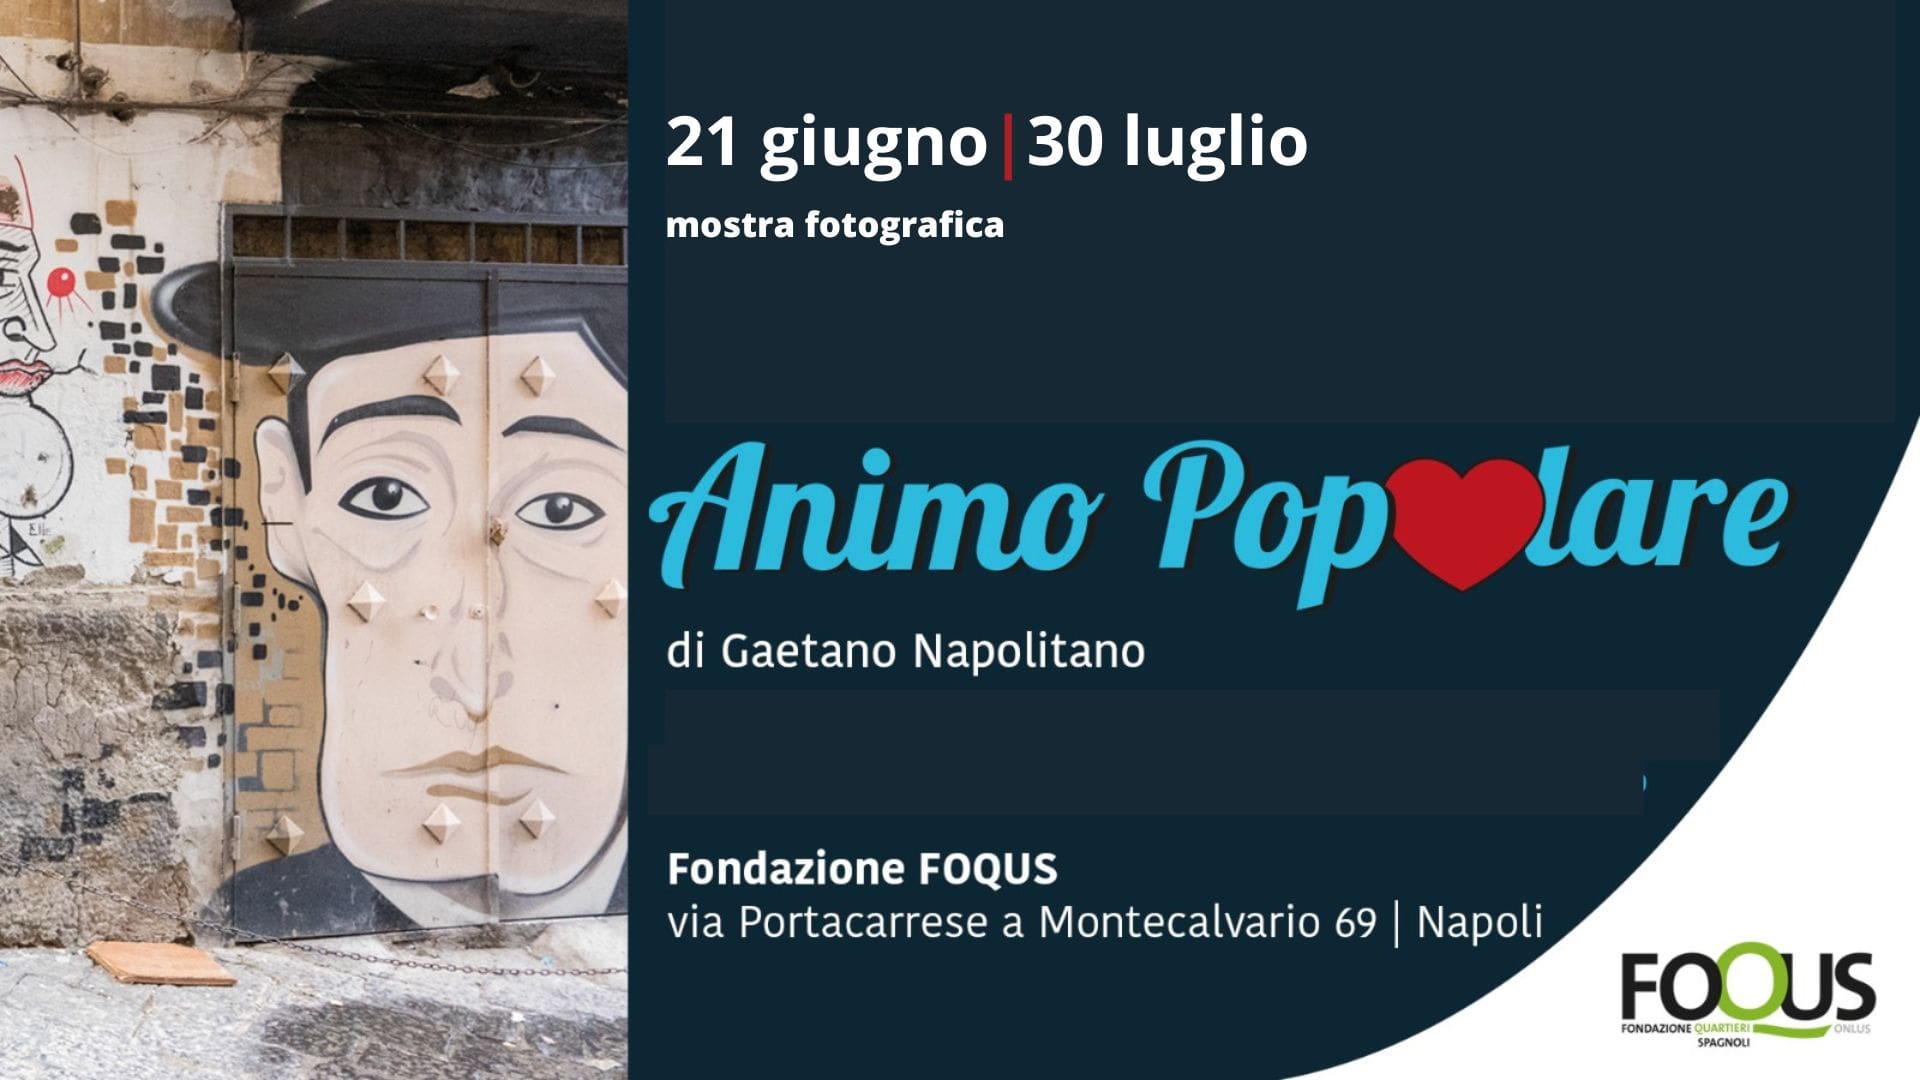 Animo Popolare - Gaetano Napolitano - FOQUS Fondazione Quartieri Spagnoli - Mostra fotografica - Galleria arte contemporanea Portacarrese